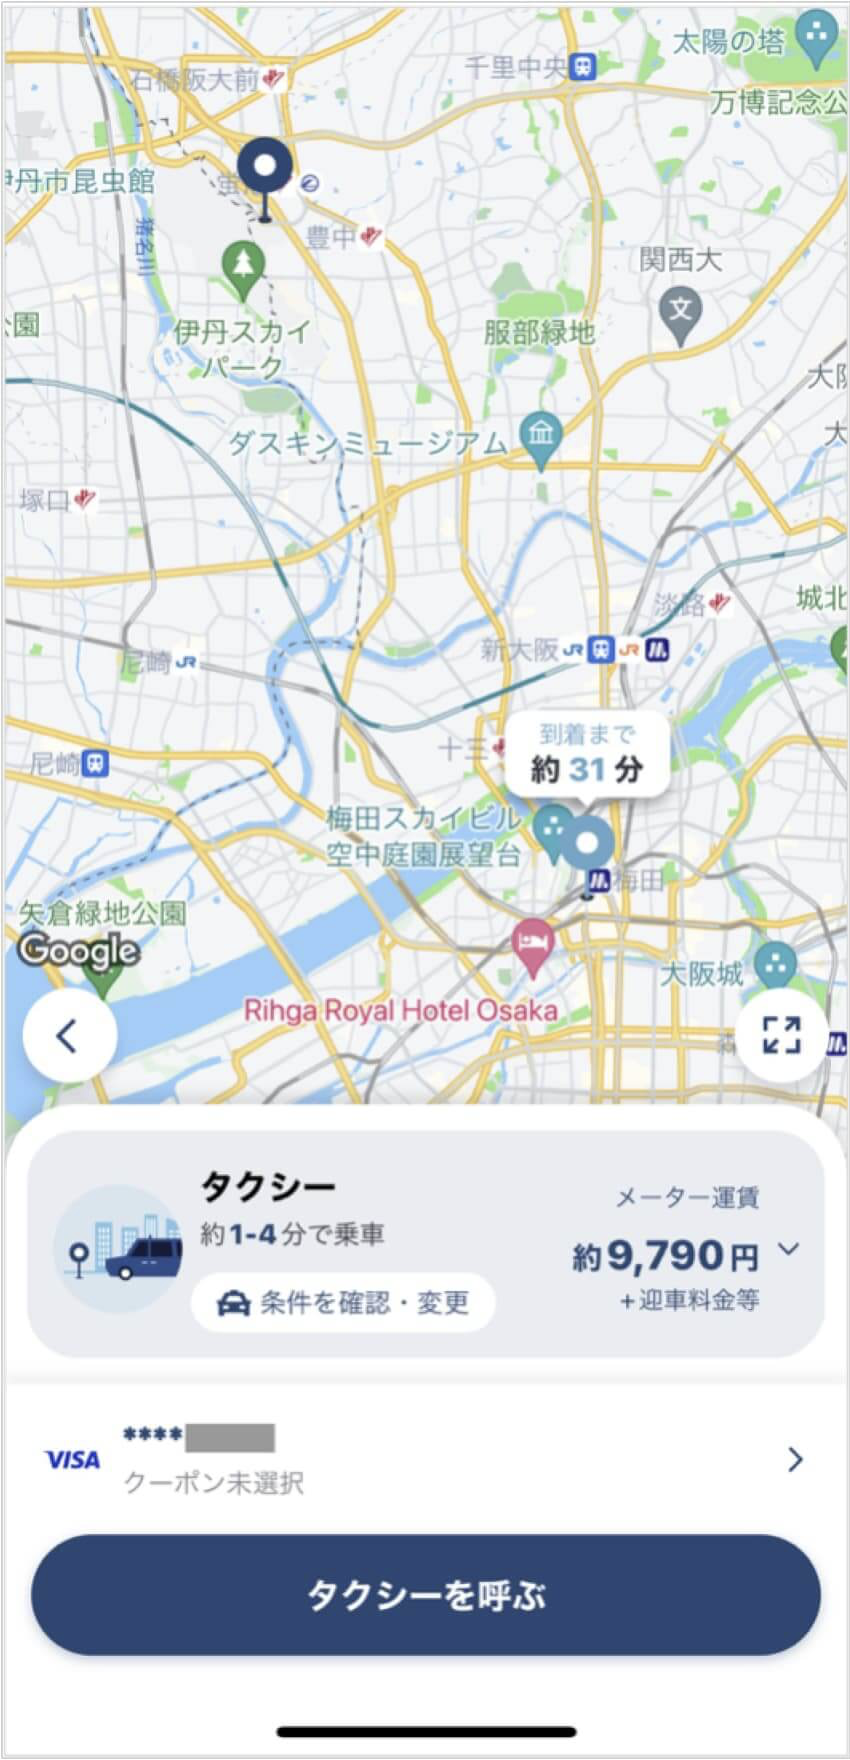 伊丹空港から梅田までのタクシー料金・所要時間まとめ